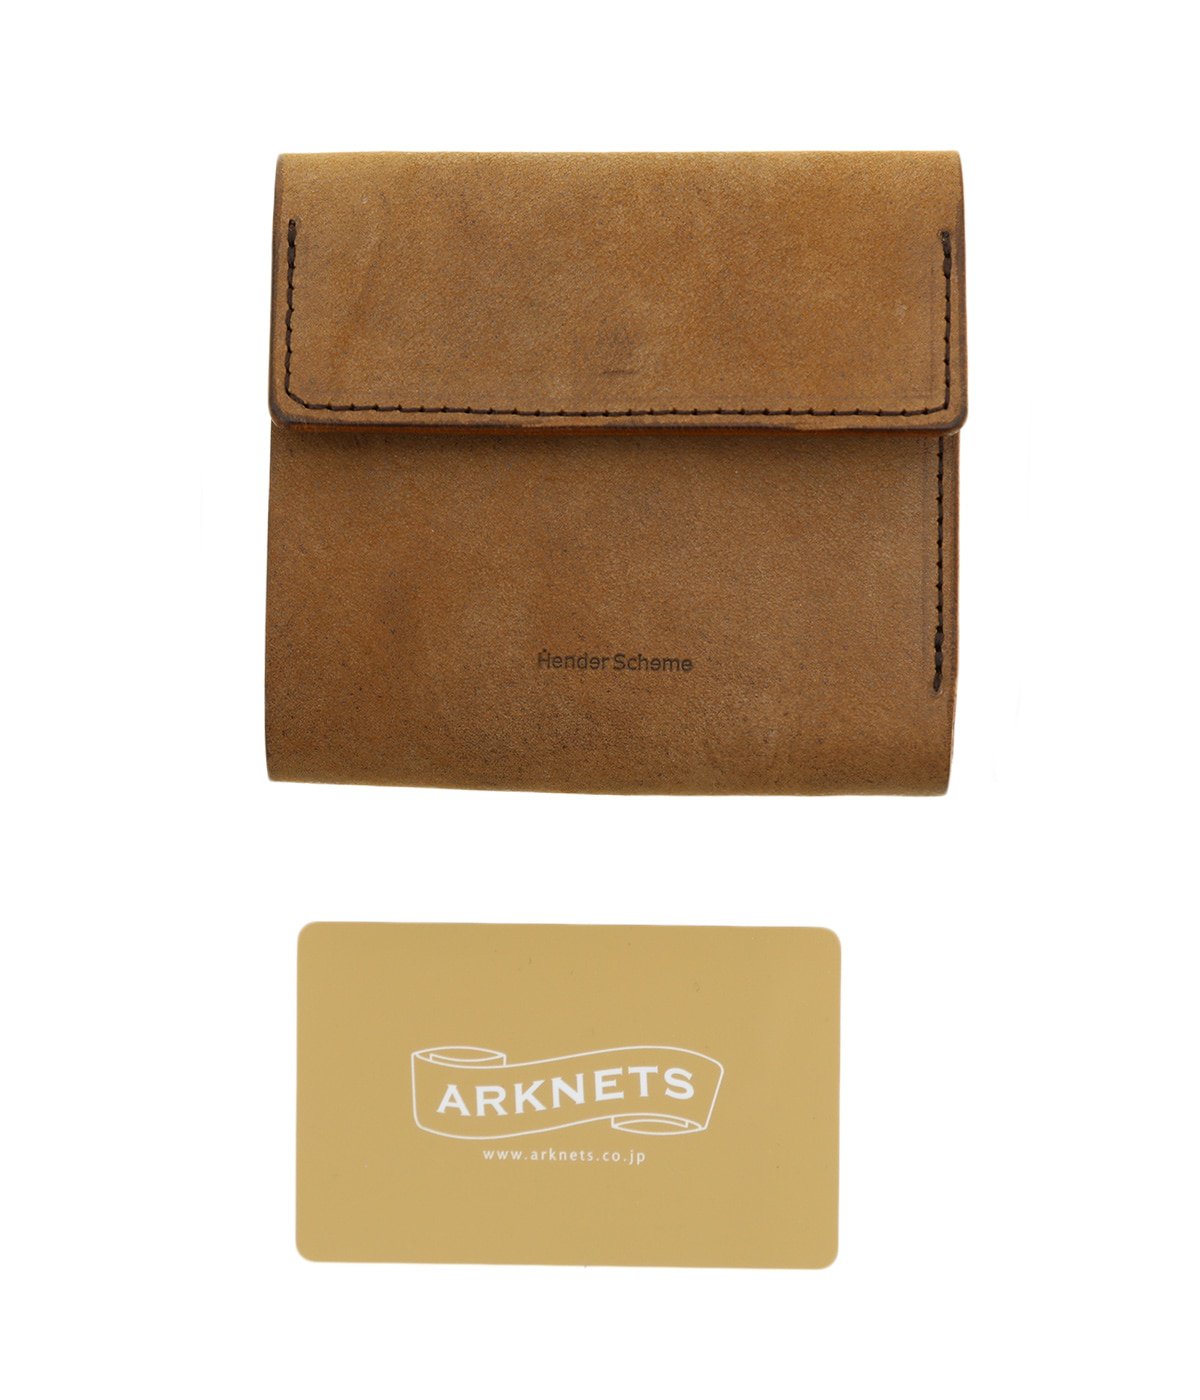 Hender Scheme(エンダースキーマ) clasp wallet / ファッション雑貨 